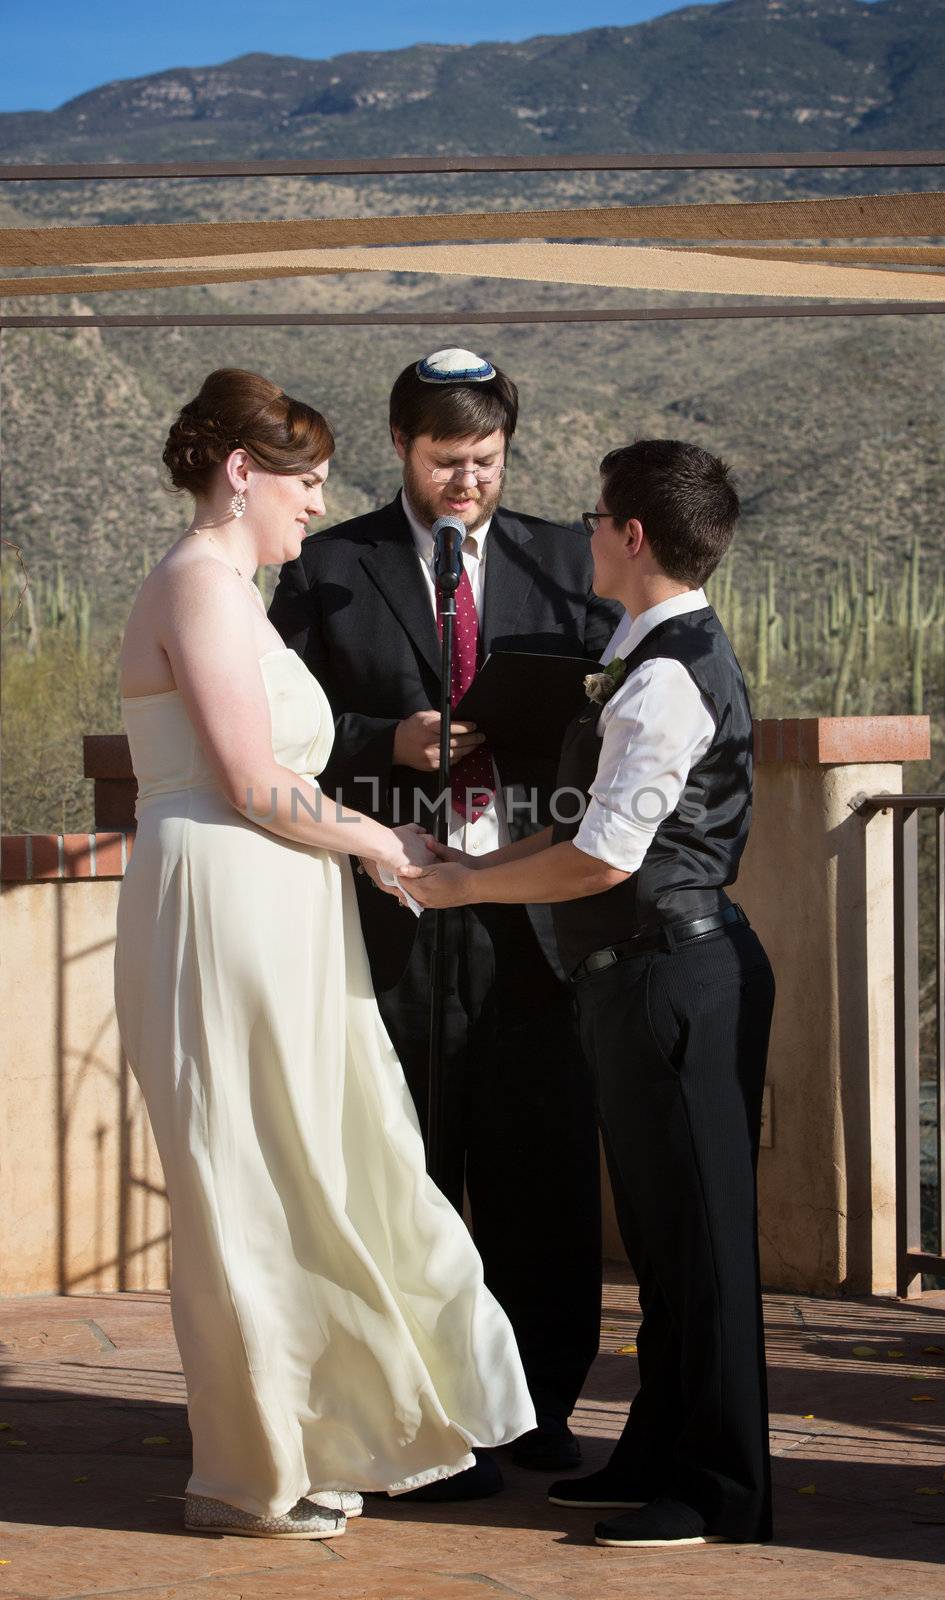 Rabbi blessing lesbian marriage ceremony in desert